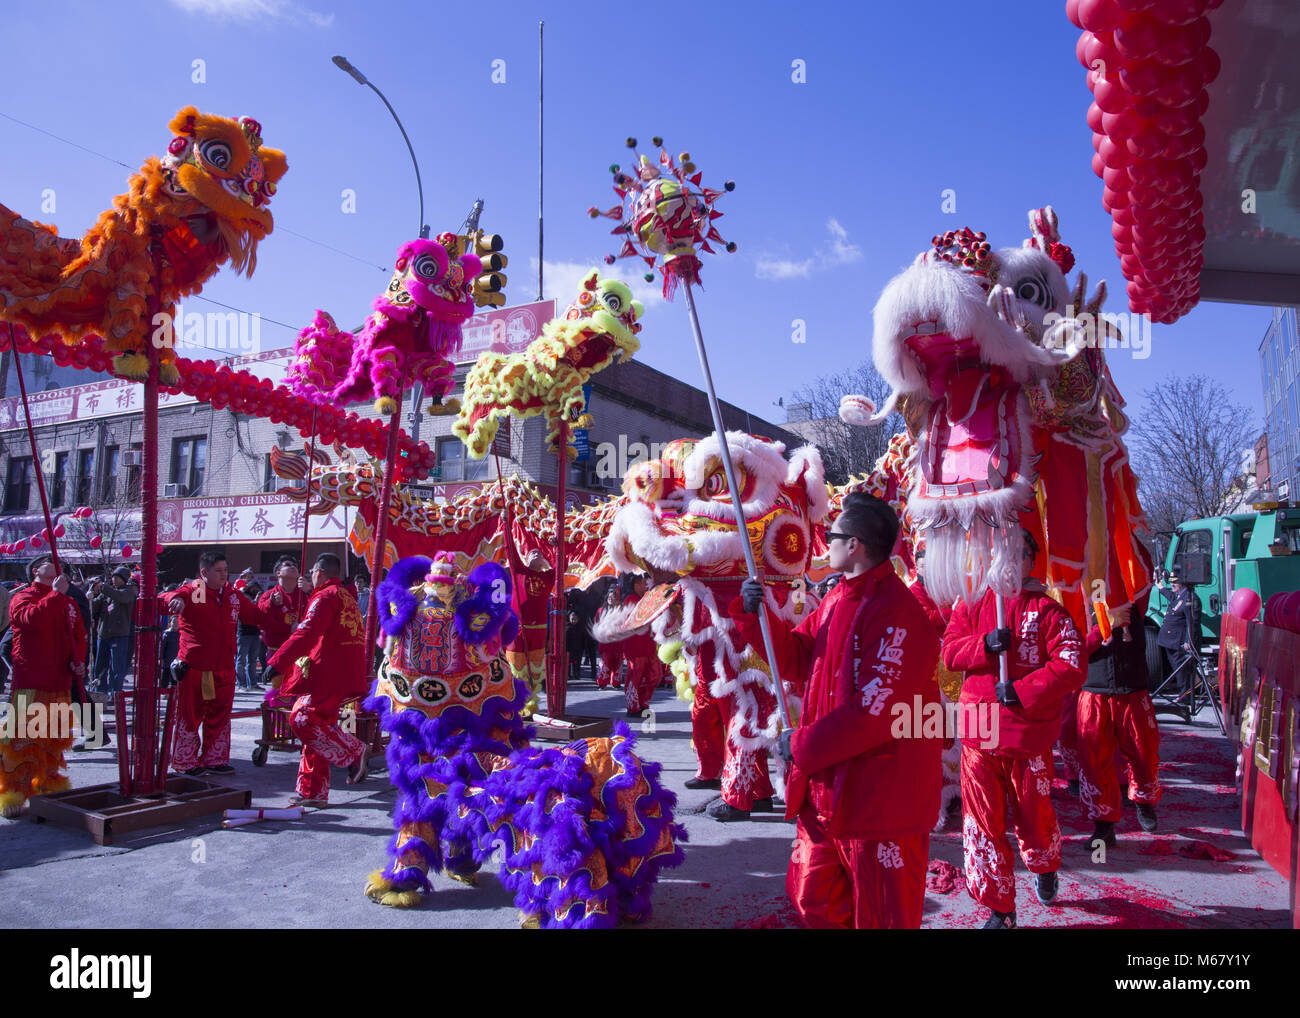 Le lion et dragon, les danseurs sont nombreux à sortir au Nouvel An chinois autour de Chinatown dans le quartier de Sunset Park, Brooklyn, New York. Banque D'Images